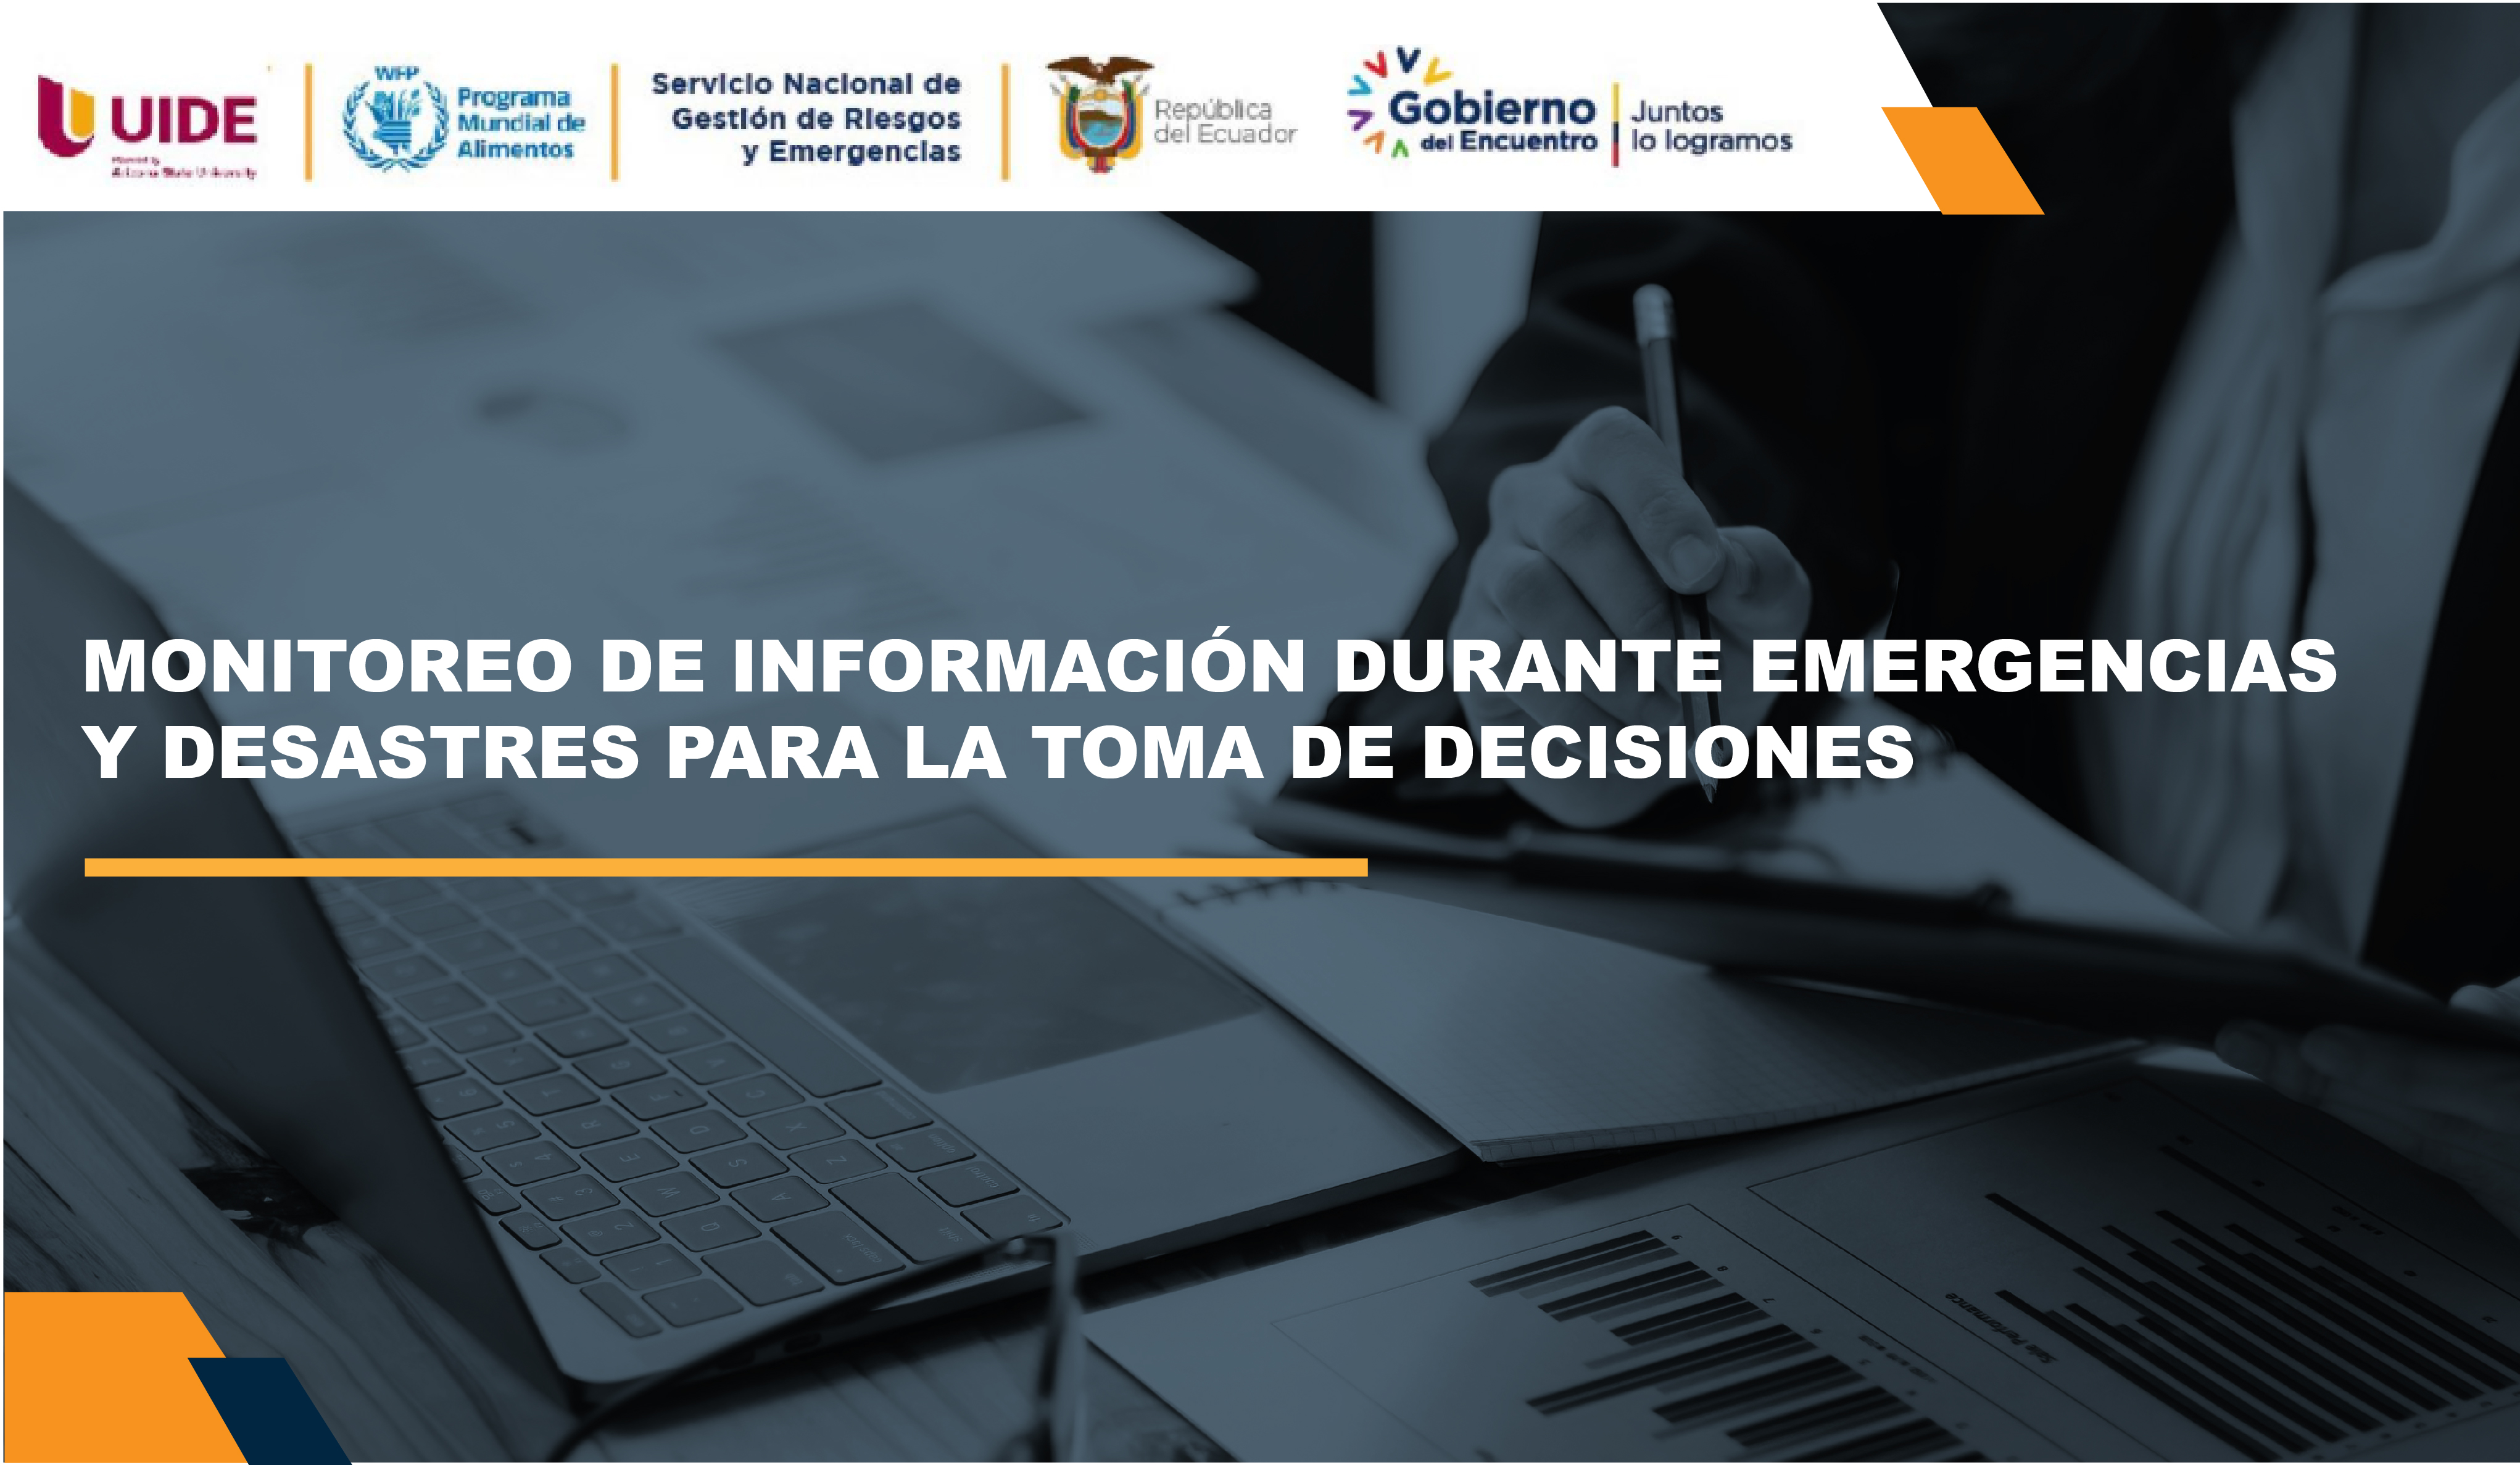 MONITOREO DE INFORMACIÓN DURANTE EMERGENCIAS Y DESASTRES. UIDE012